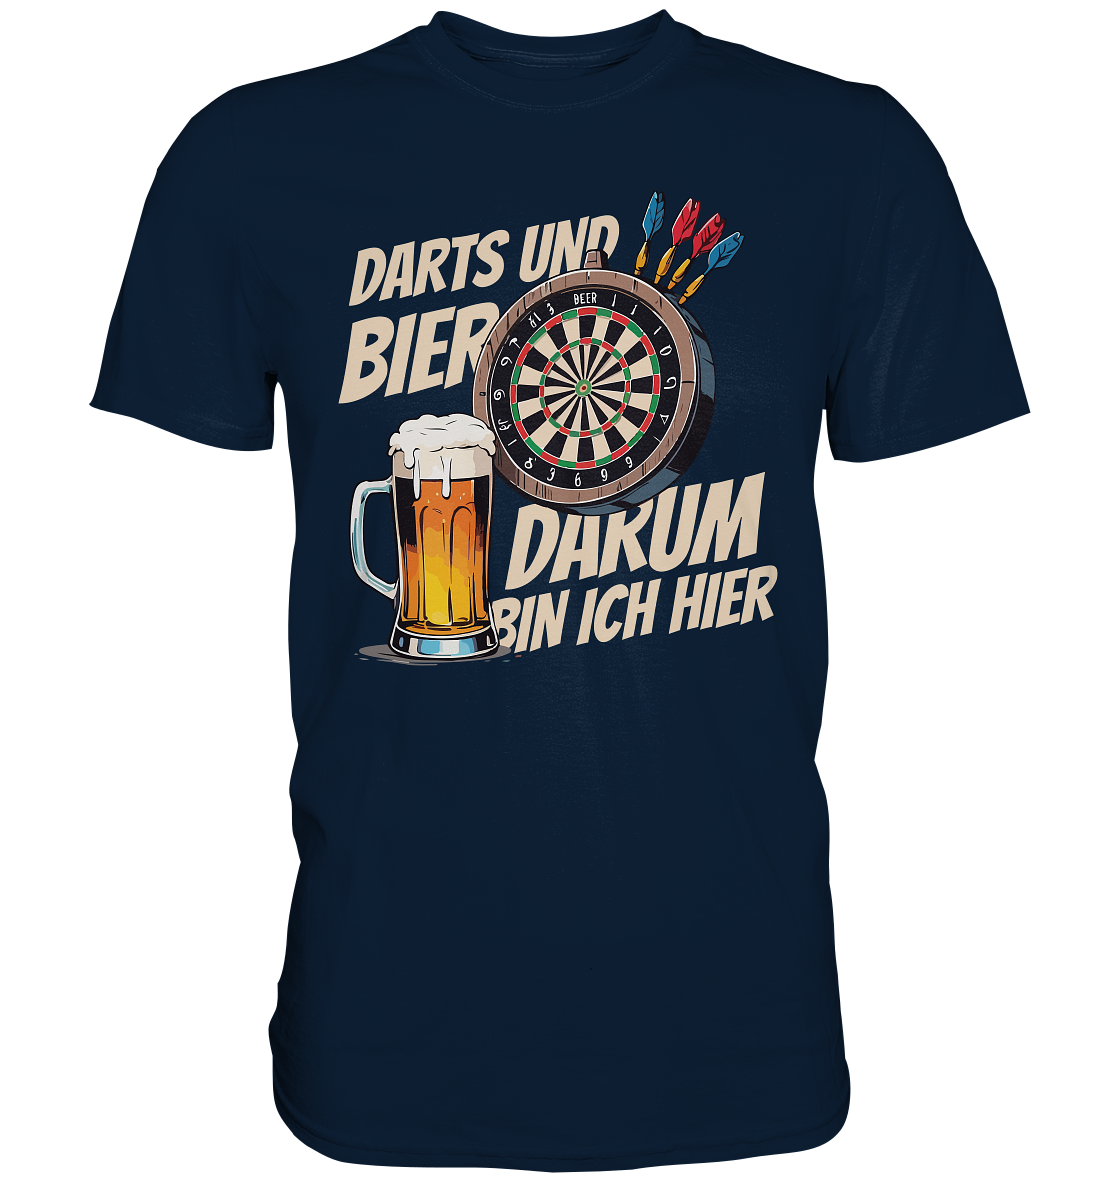 Lustiges Darts T-Shirt mit Bier-Motiv – Ideales Geschenk